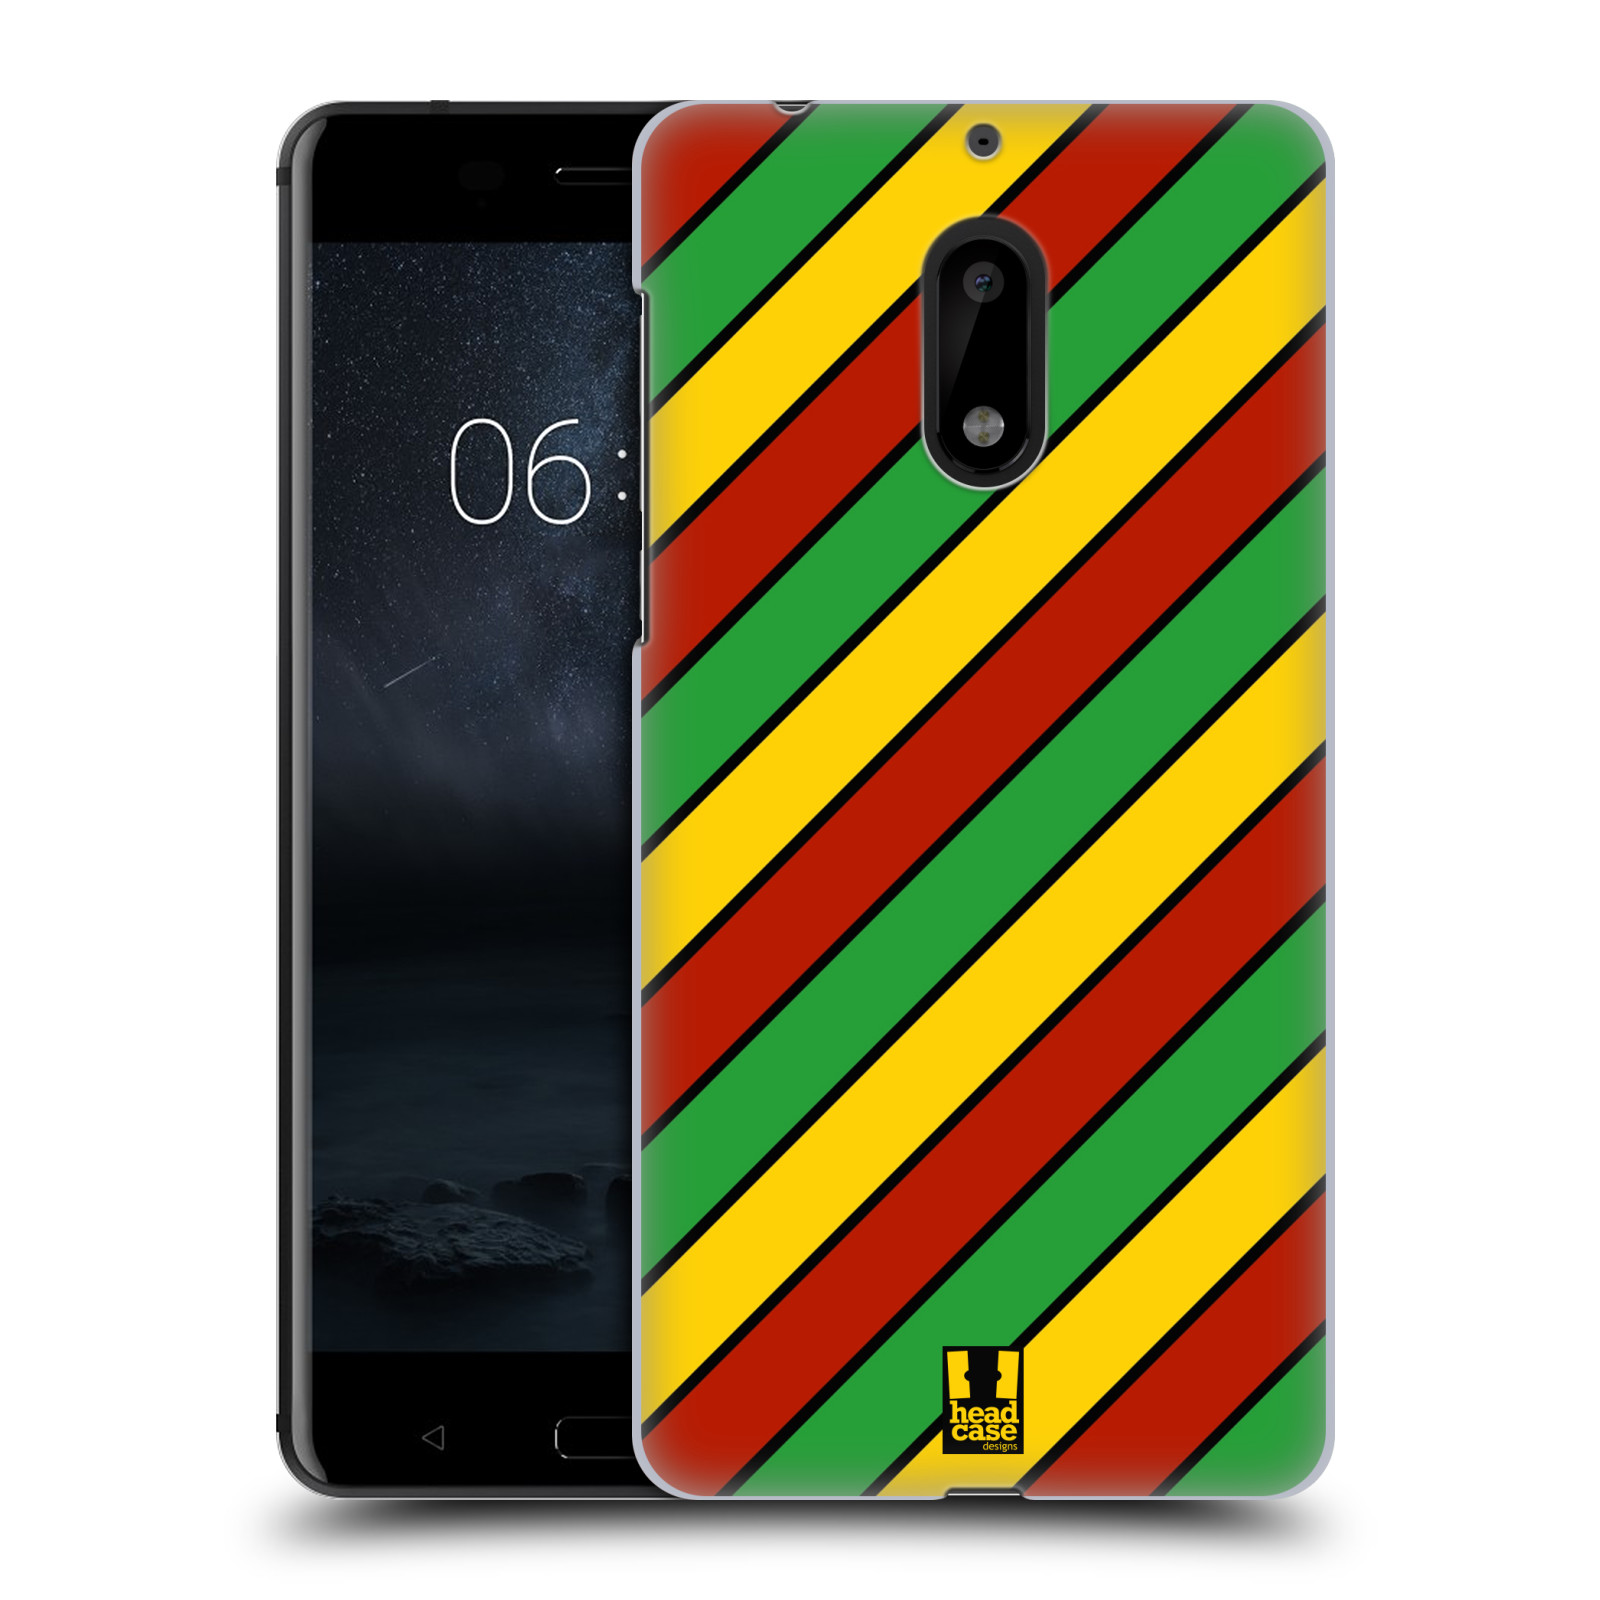 HEAD CASE plastový obal na mobil Nokia 6 vzor Rasta barevné vzory PRUHY